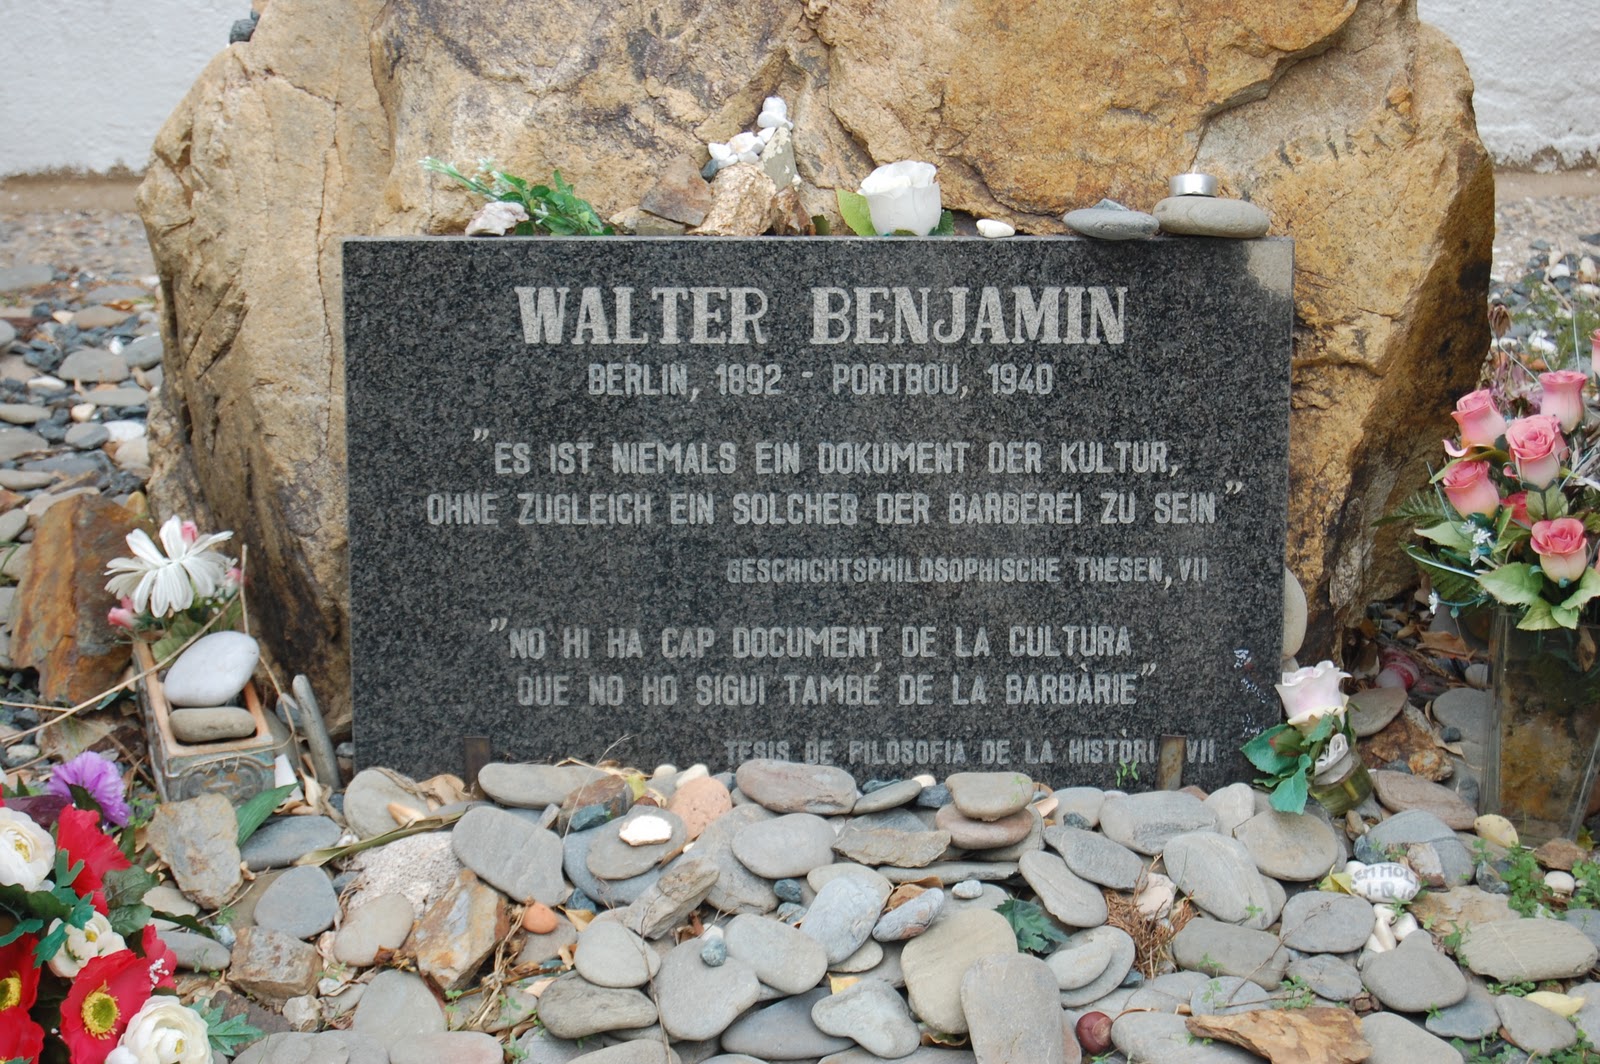 Memortabulo al Walter Benjamin, hieraŭ en la tombejo de Portbou